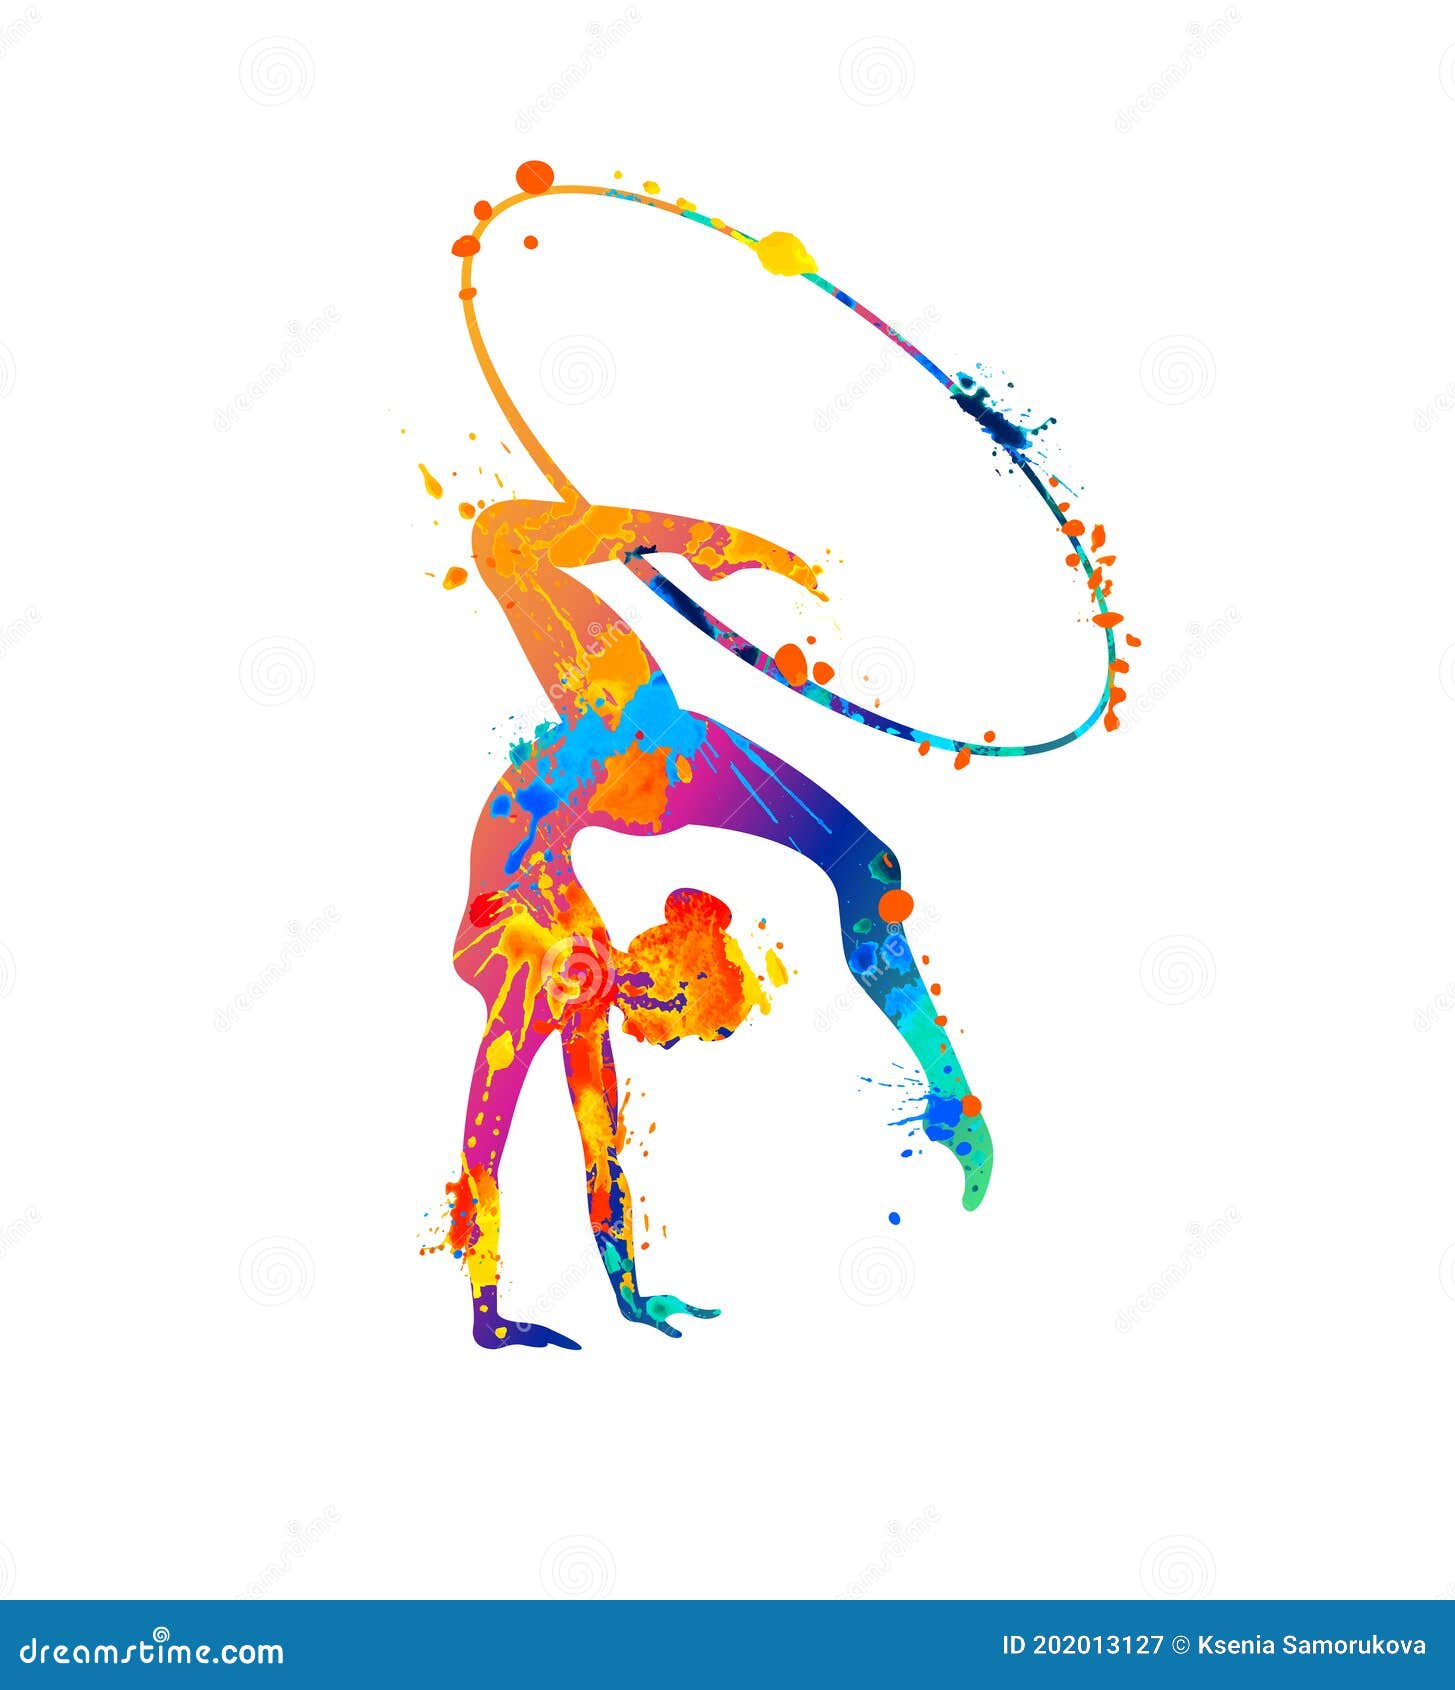 Vinilo Pixerstick Icono de la chica practicando gimnasia rítmica con aro 